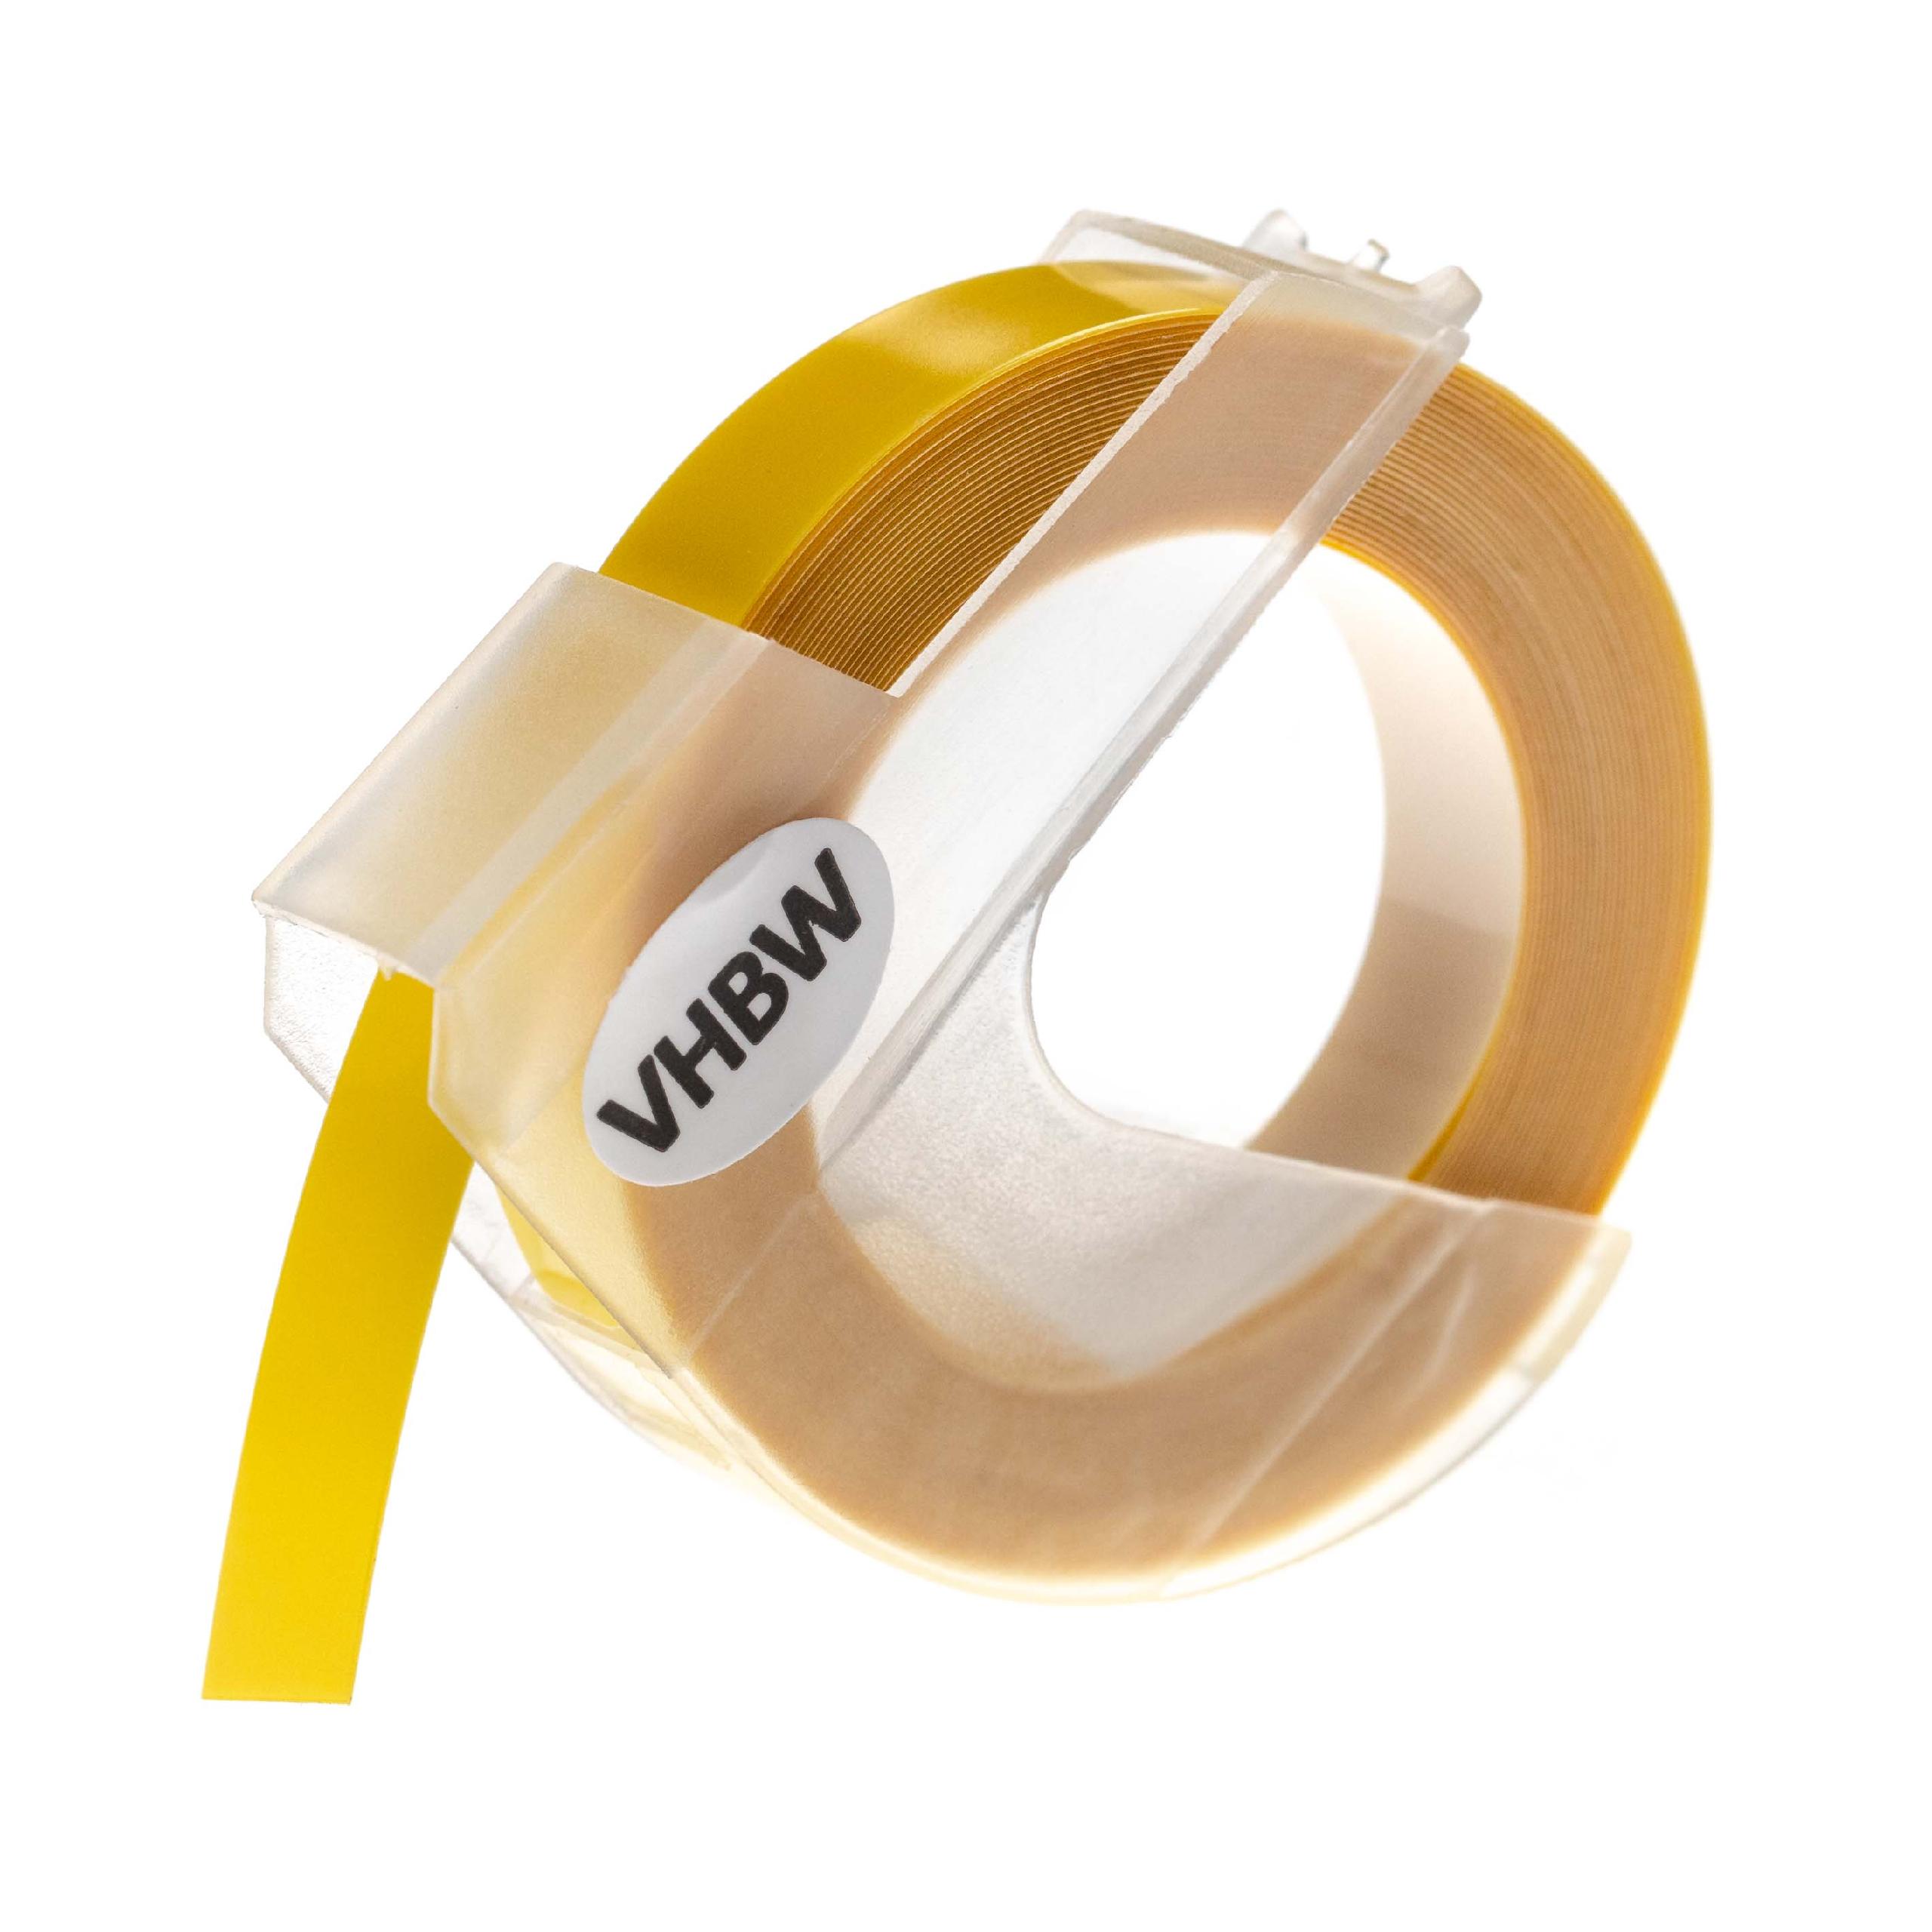 Nastro goffratura 3D sostituisce Dymo 0898220, S0898220 per etichettatrice Motex 9mm bianco su giallo chiaro